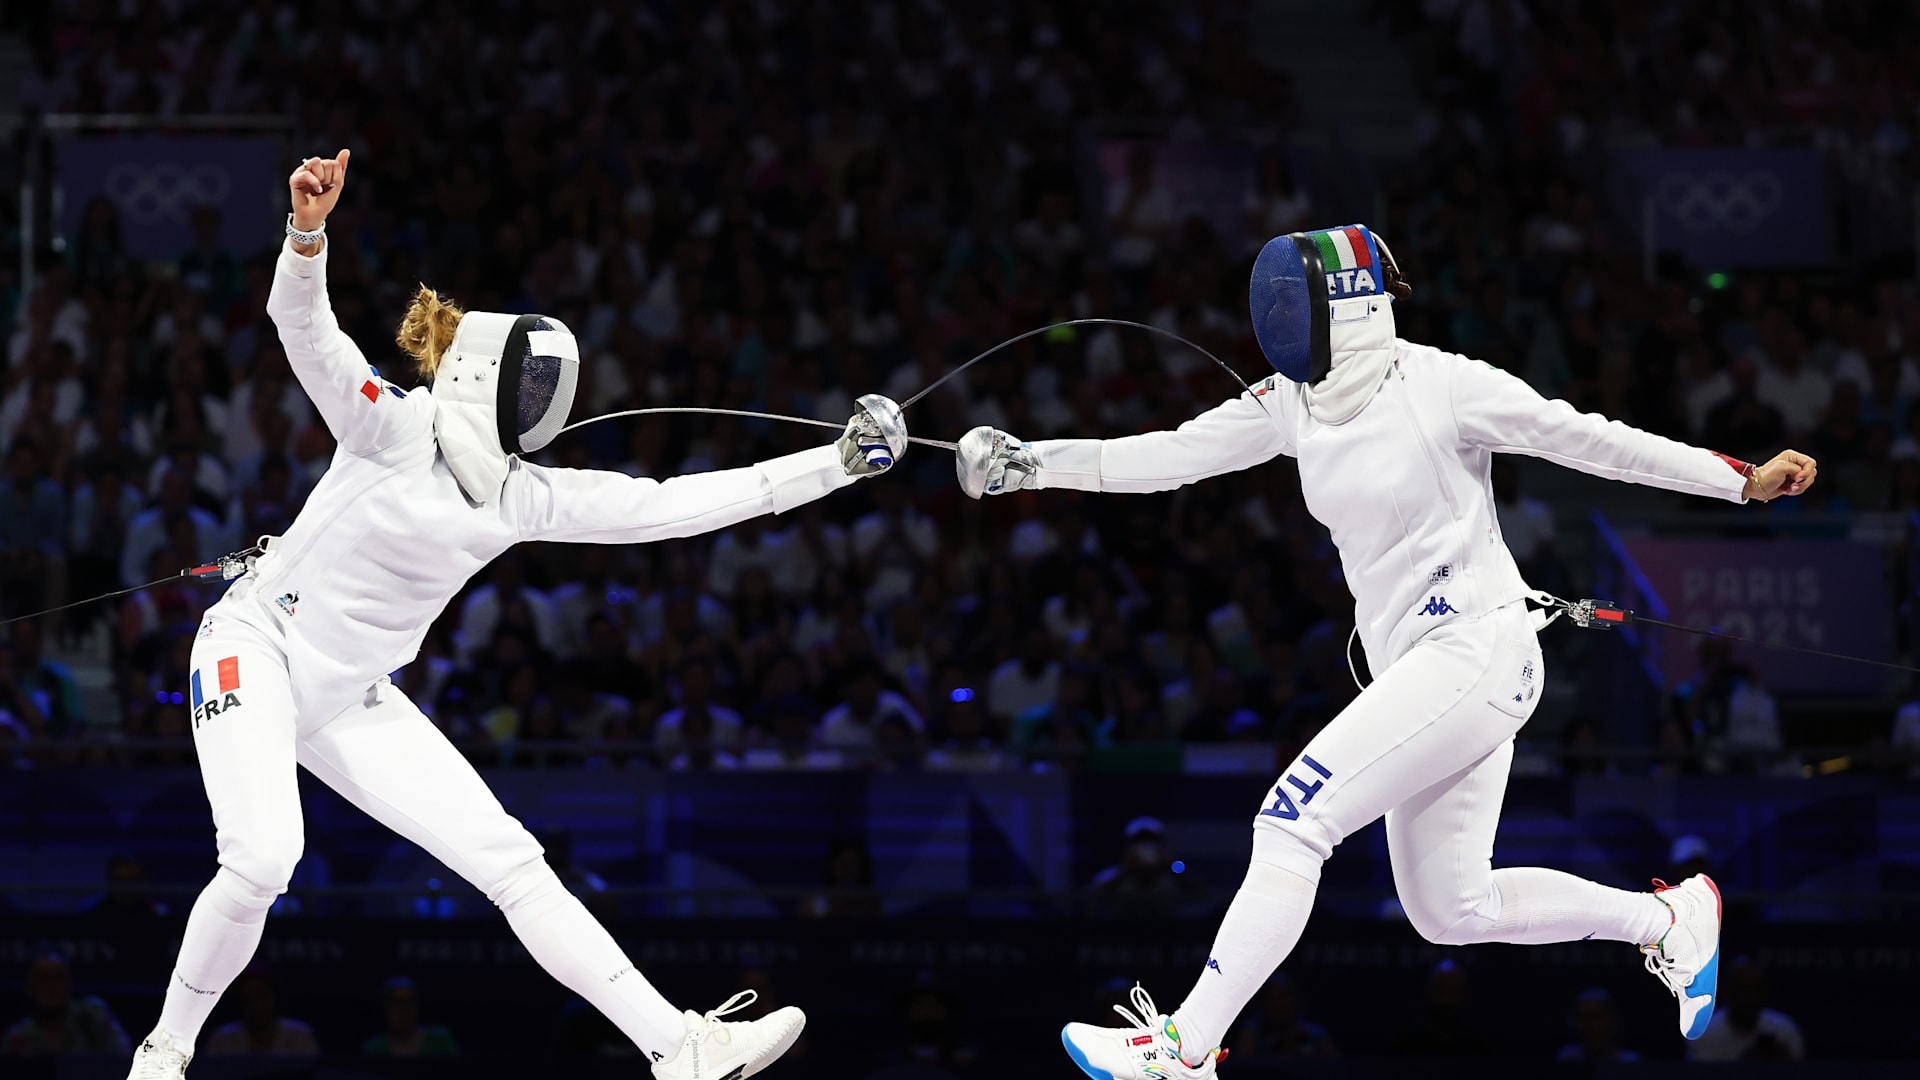 JO de Paris 2024 - Escrime : Pour une touche, l'Italie prive la France du titre olympique en épée par équipes femmes | Résultats, résumé, réactions